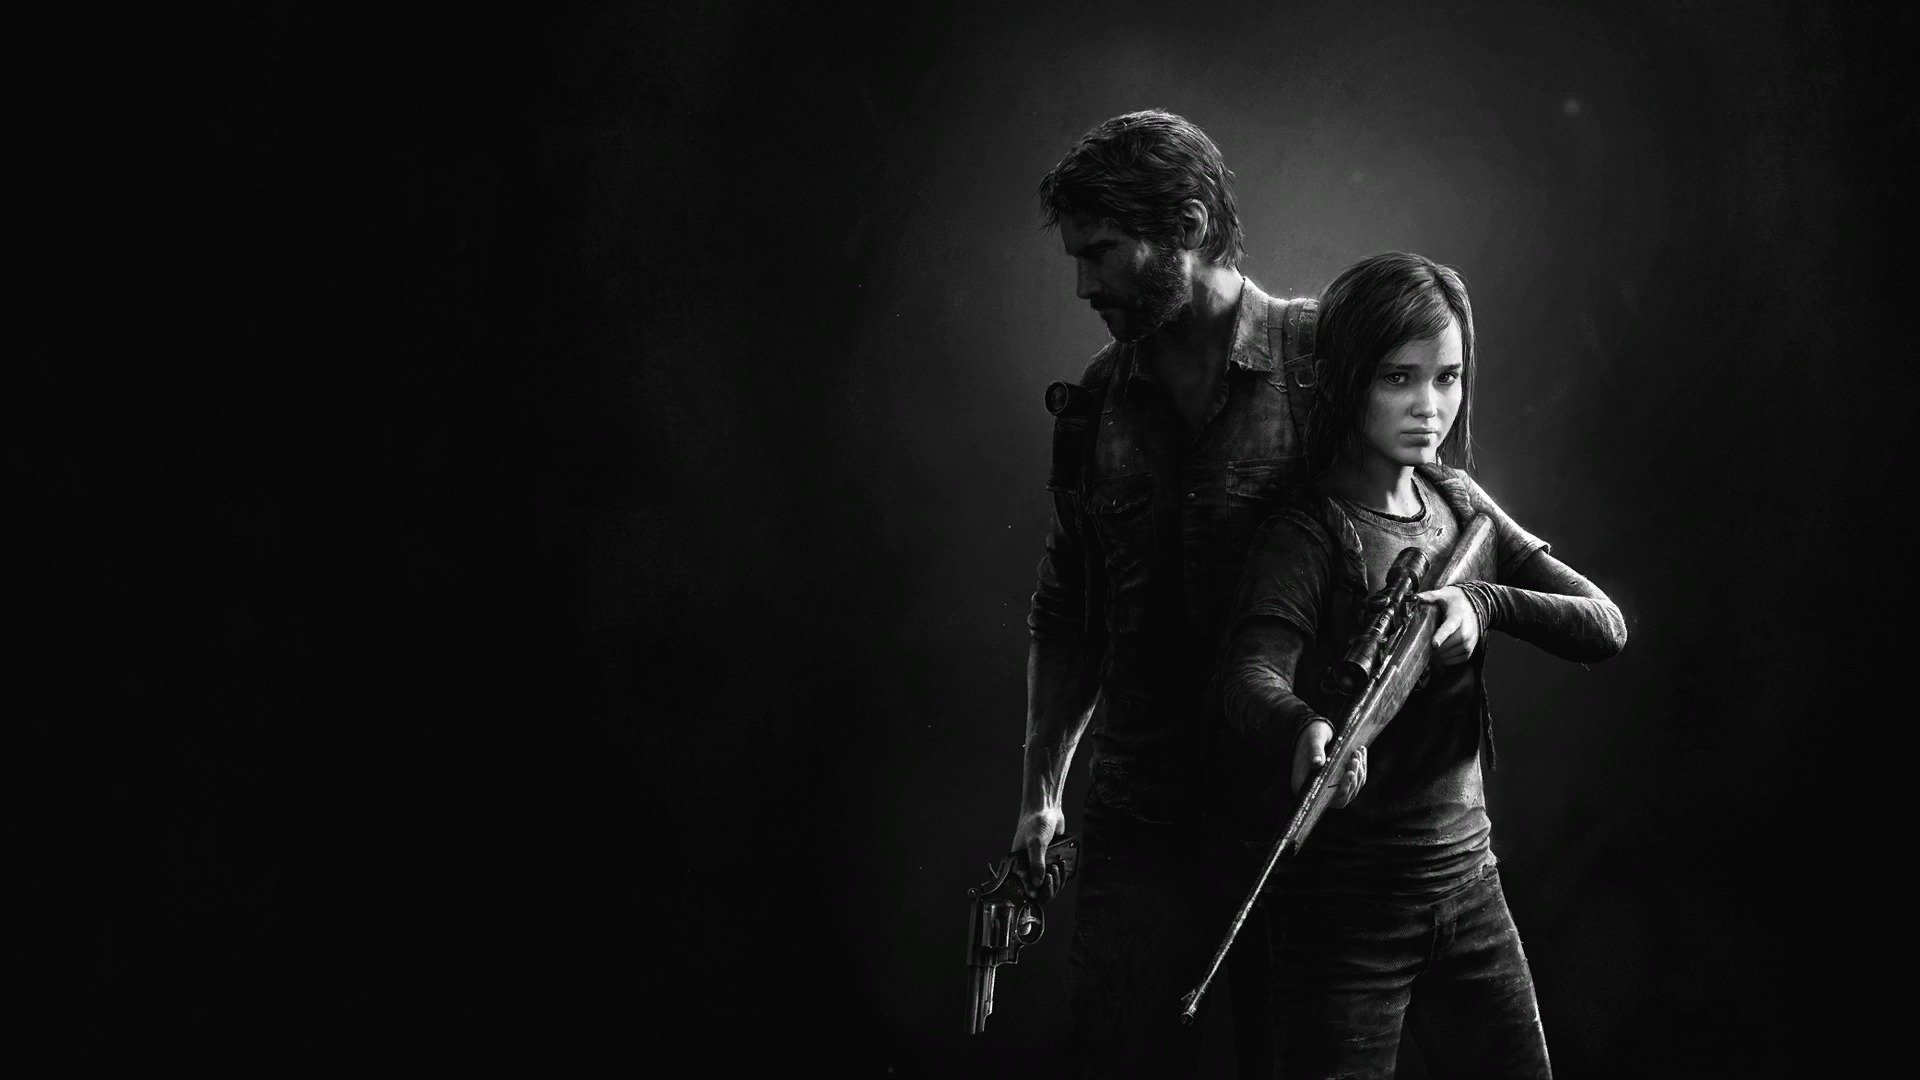 Superando “La Casa del Dragon” la serie “The Last Of Us” sigue sumando cifras